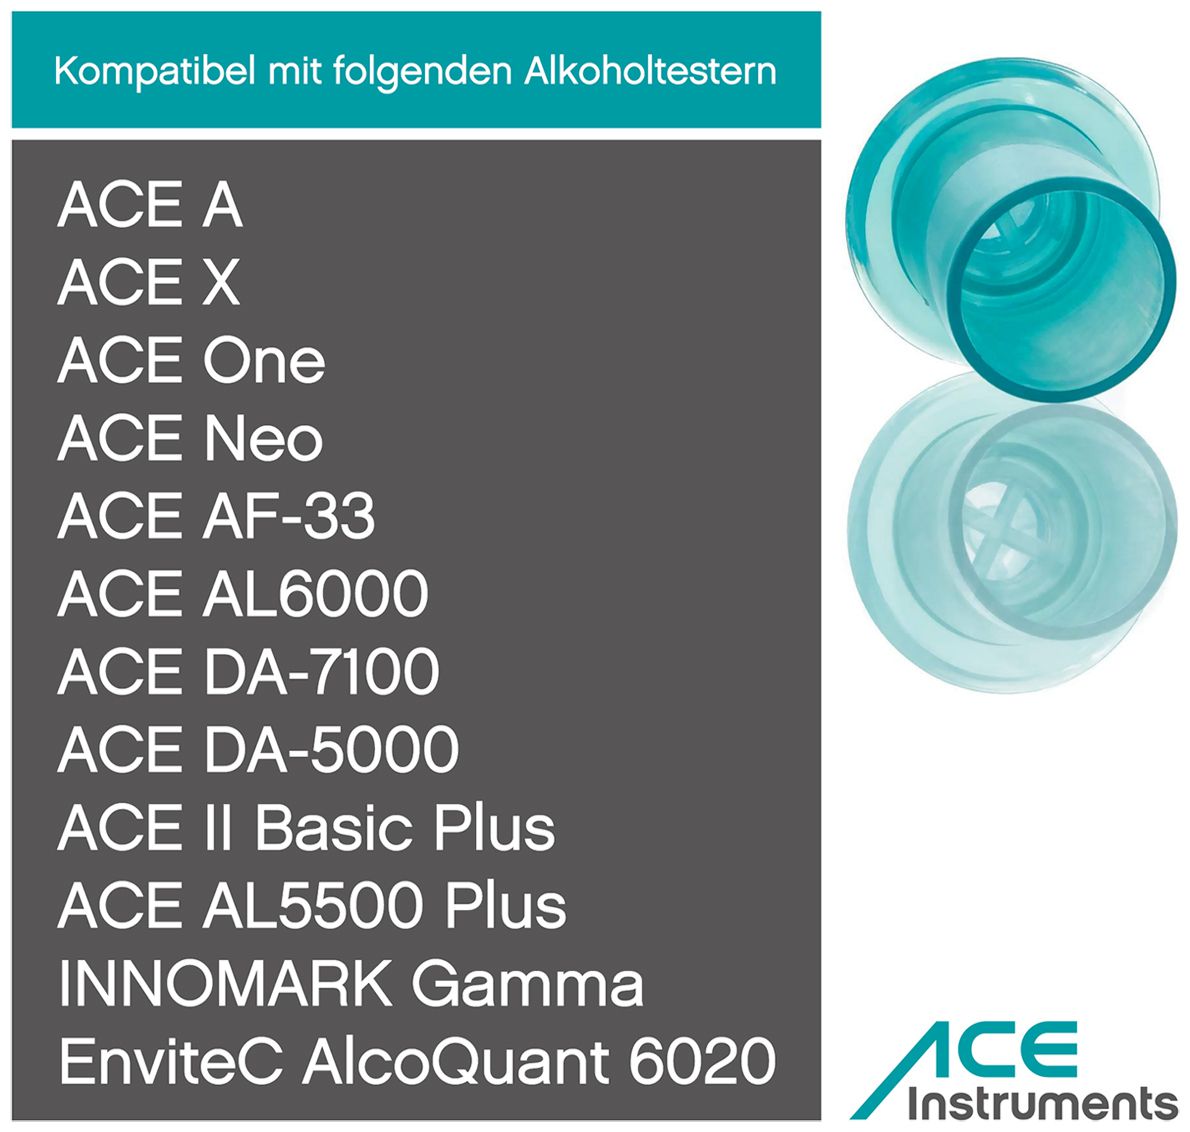 ACE Mundstücke - für ACE AL 5500 Plus, ACE II Basic Plus, ACE AF-33, ACE One, ACE X uvm. - 50 Stück